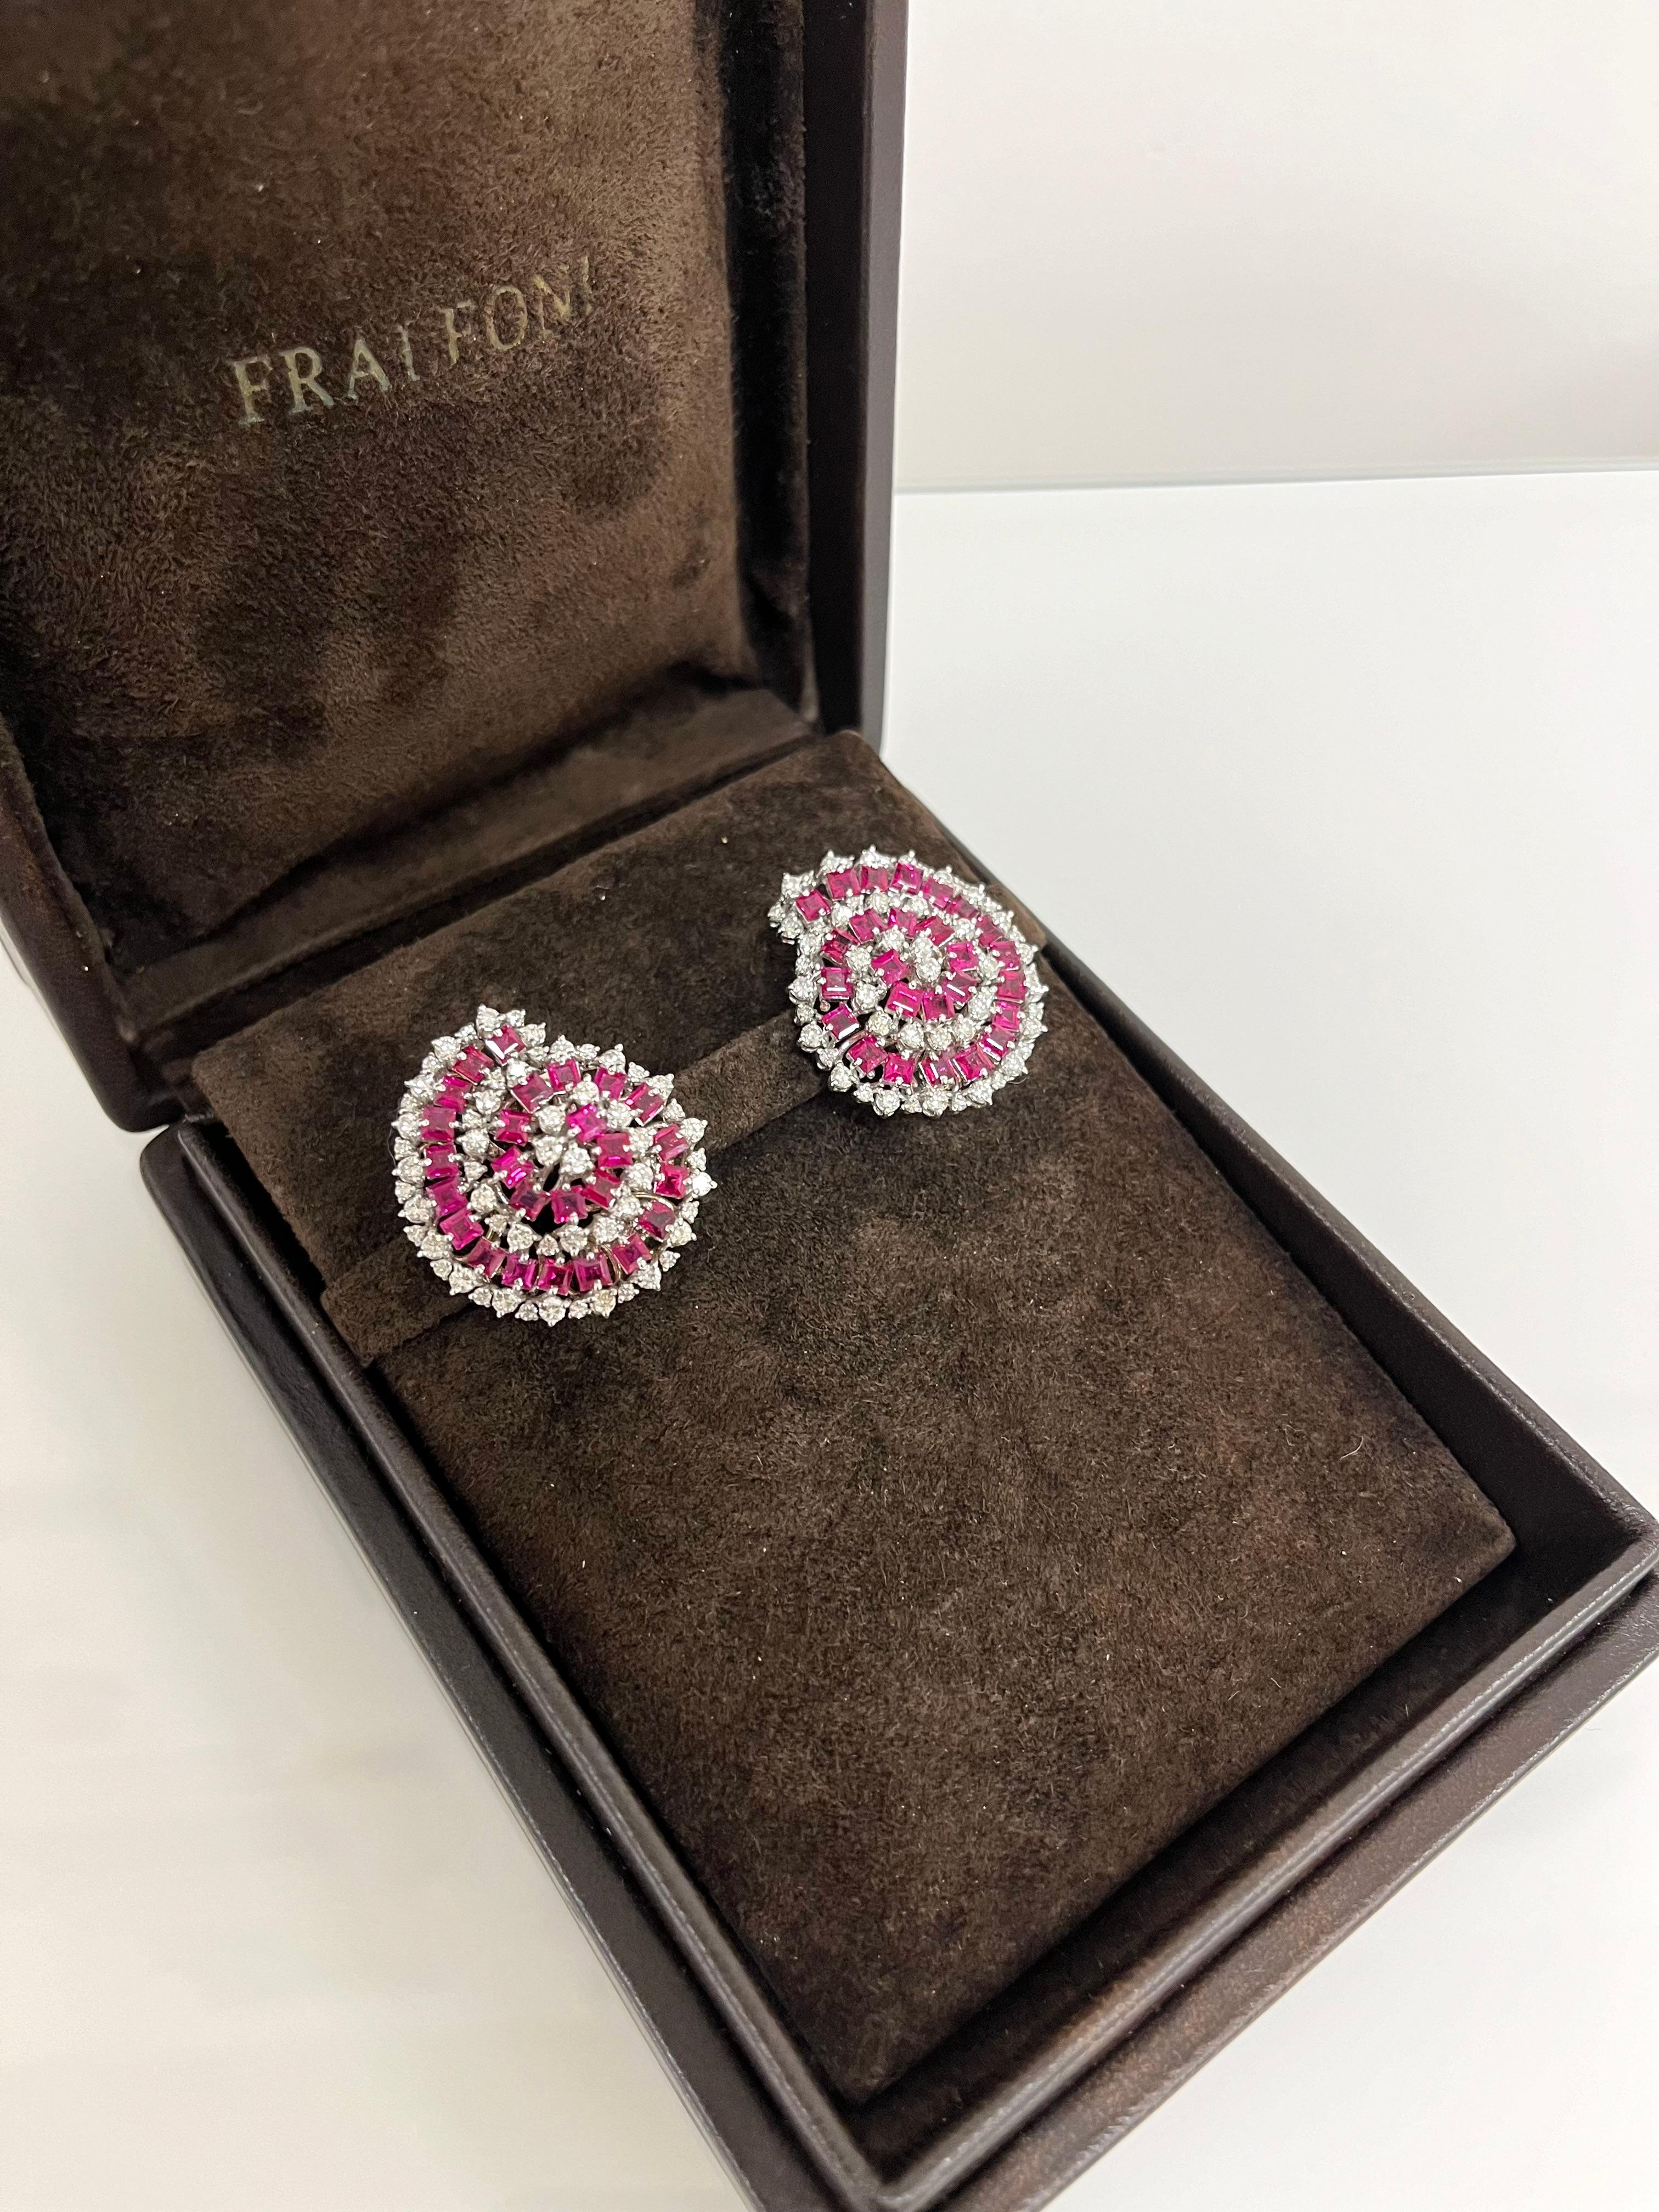 Fraleoni 18 Kt. White Gold Diamonds Rubies Clip-on Earrings For Sale 4